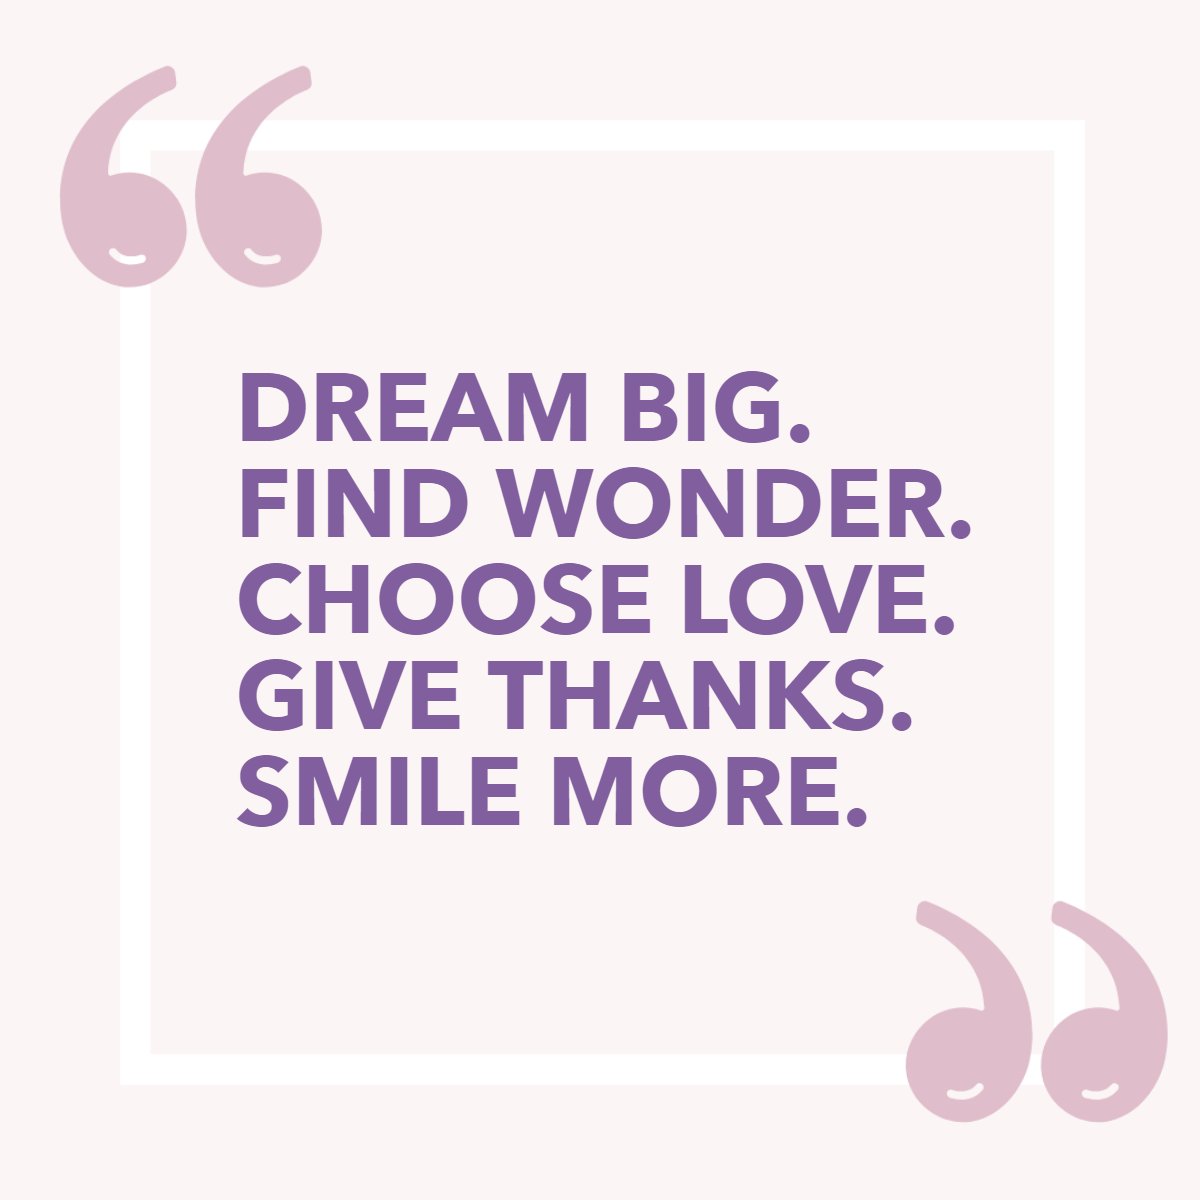 Dream Big.
Find Wonder. 
Choose Love. 
Give Thanks. 
Smile More.🤗

#dreambig    #givethanks    #smilemore    #bigdreams    #ichooselove    #findwonder    #smilemore
#cherylcitro